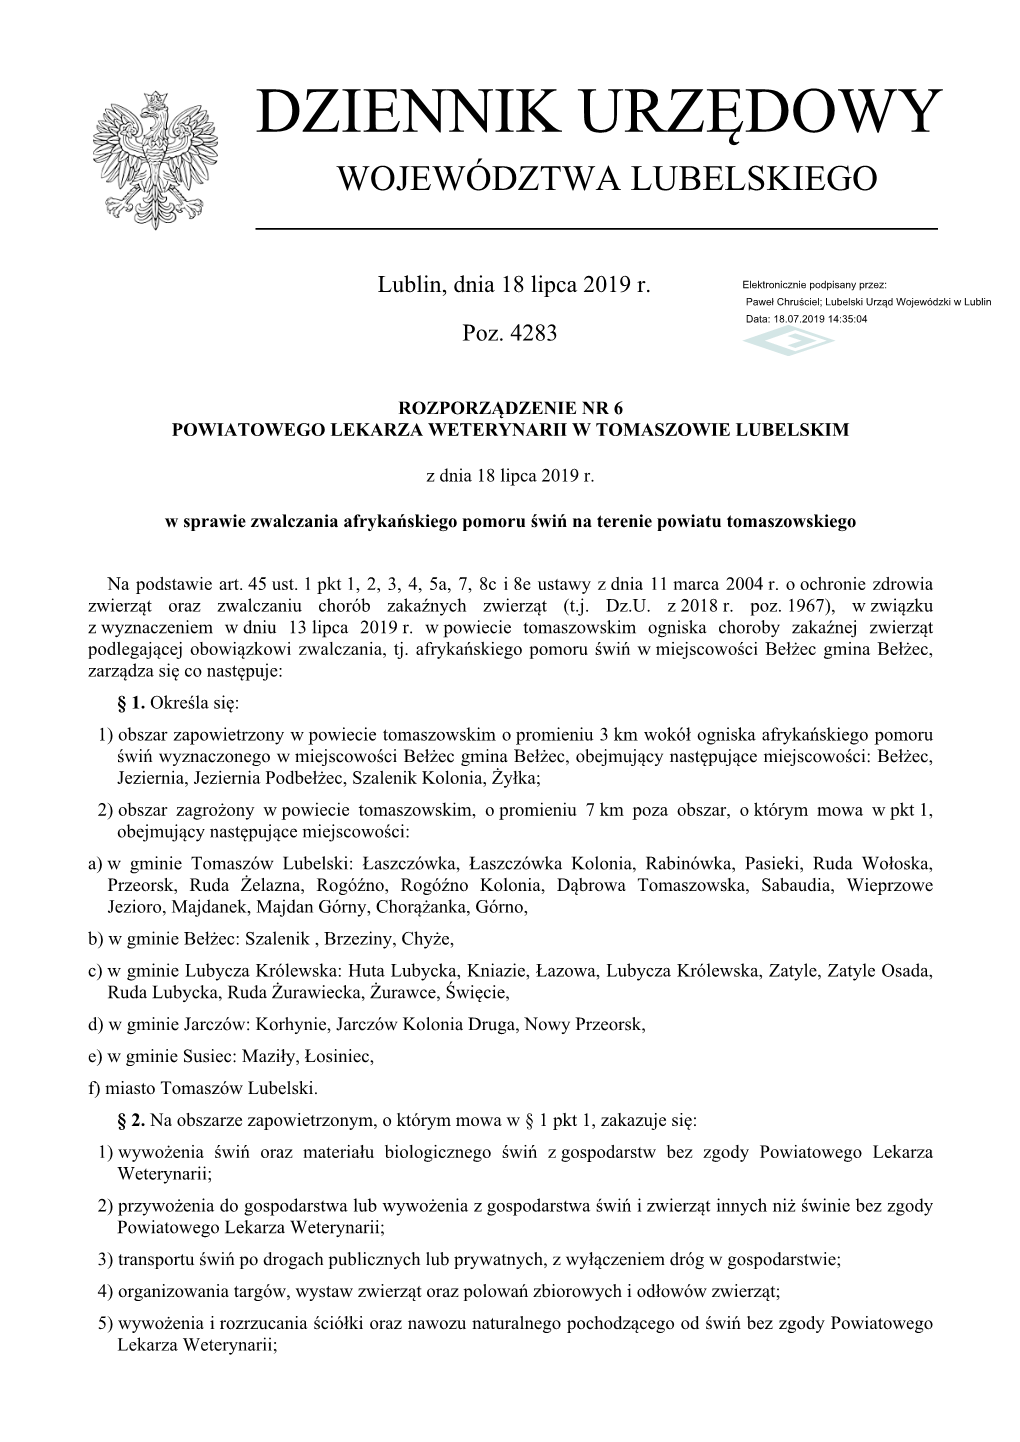 Rozporządzenie Nr 6 Powiatowego Lekarza Weterynarii W Tomaszowie Lubelskim